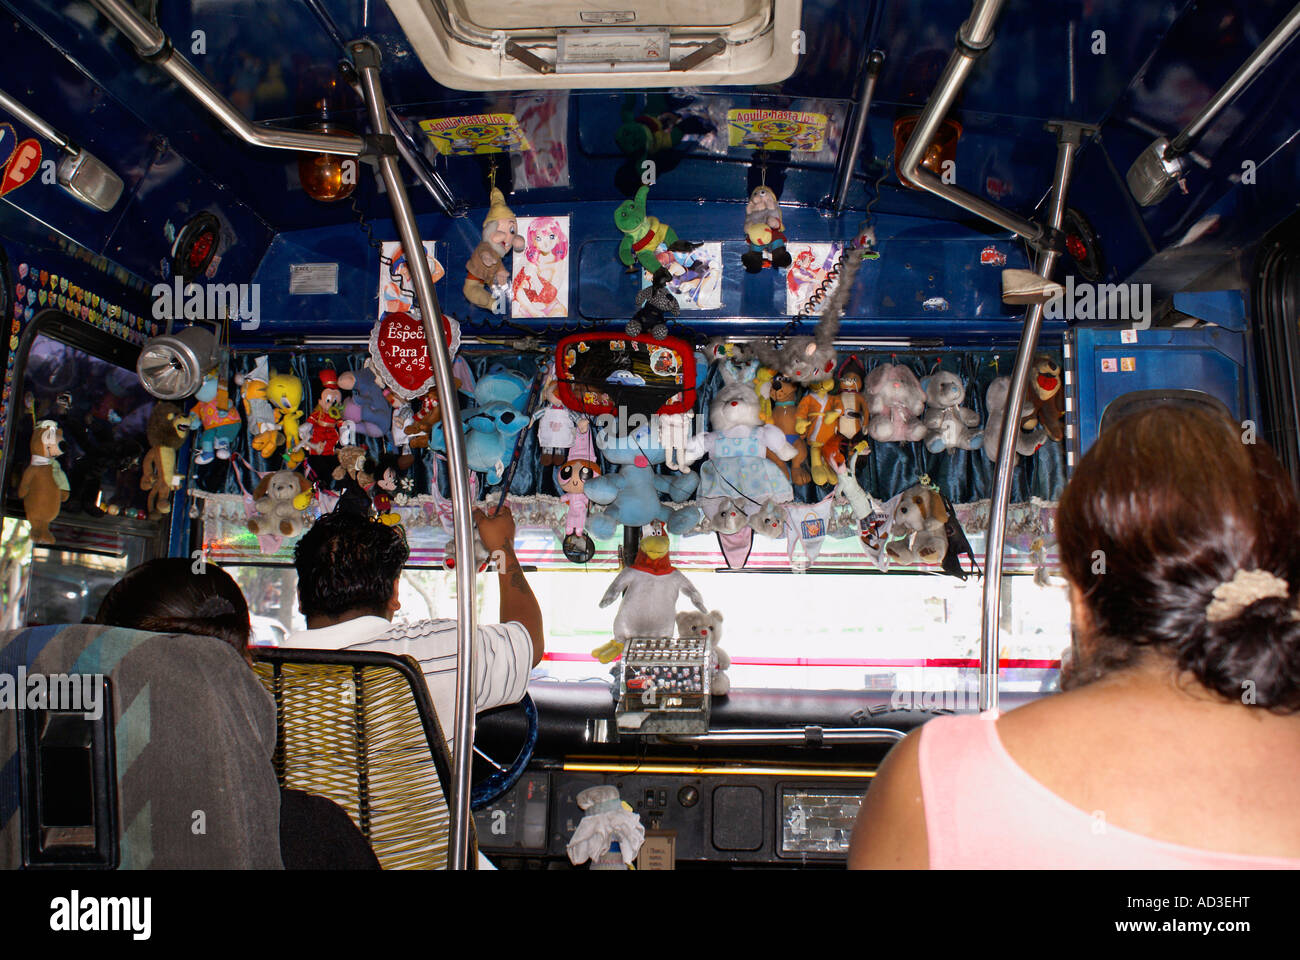 Stofftier Tiere aus der durcheinandergeworfen Armaturenbrett des öffentlichen Bus in Acapulco, Mexiko hängen Stockfoto